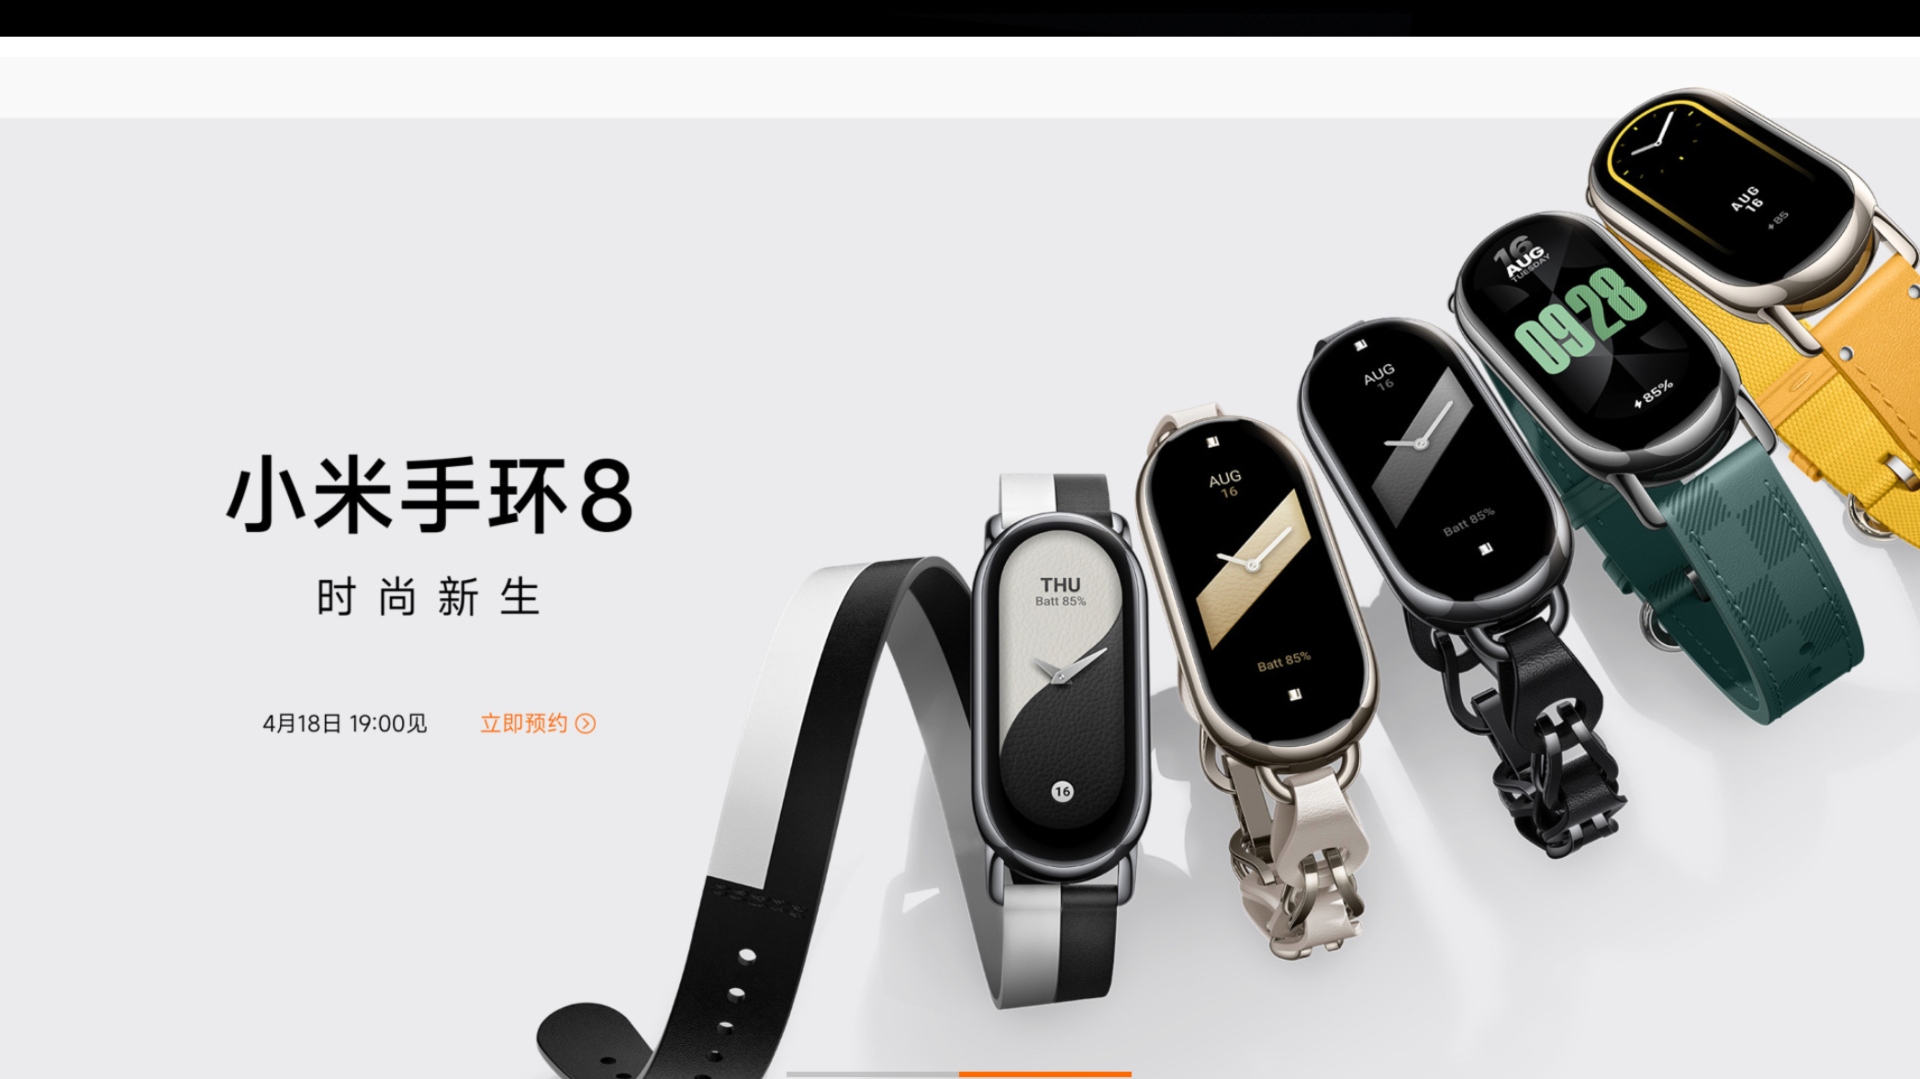 Xiaomi Mi Band 8